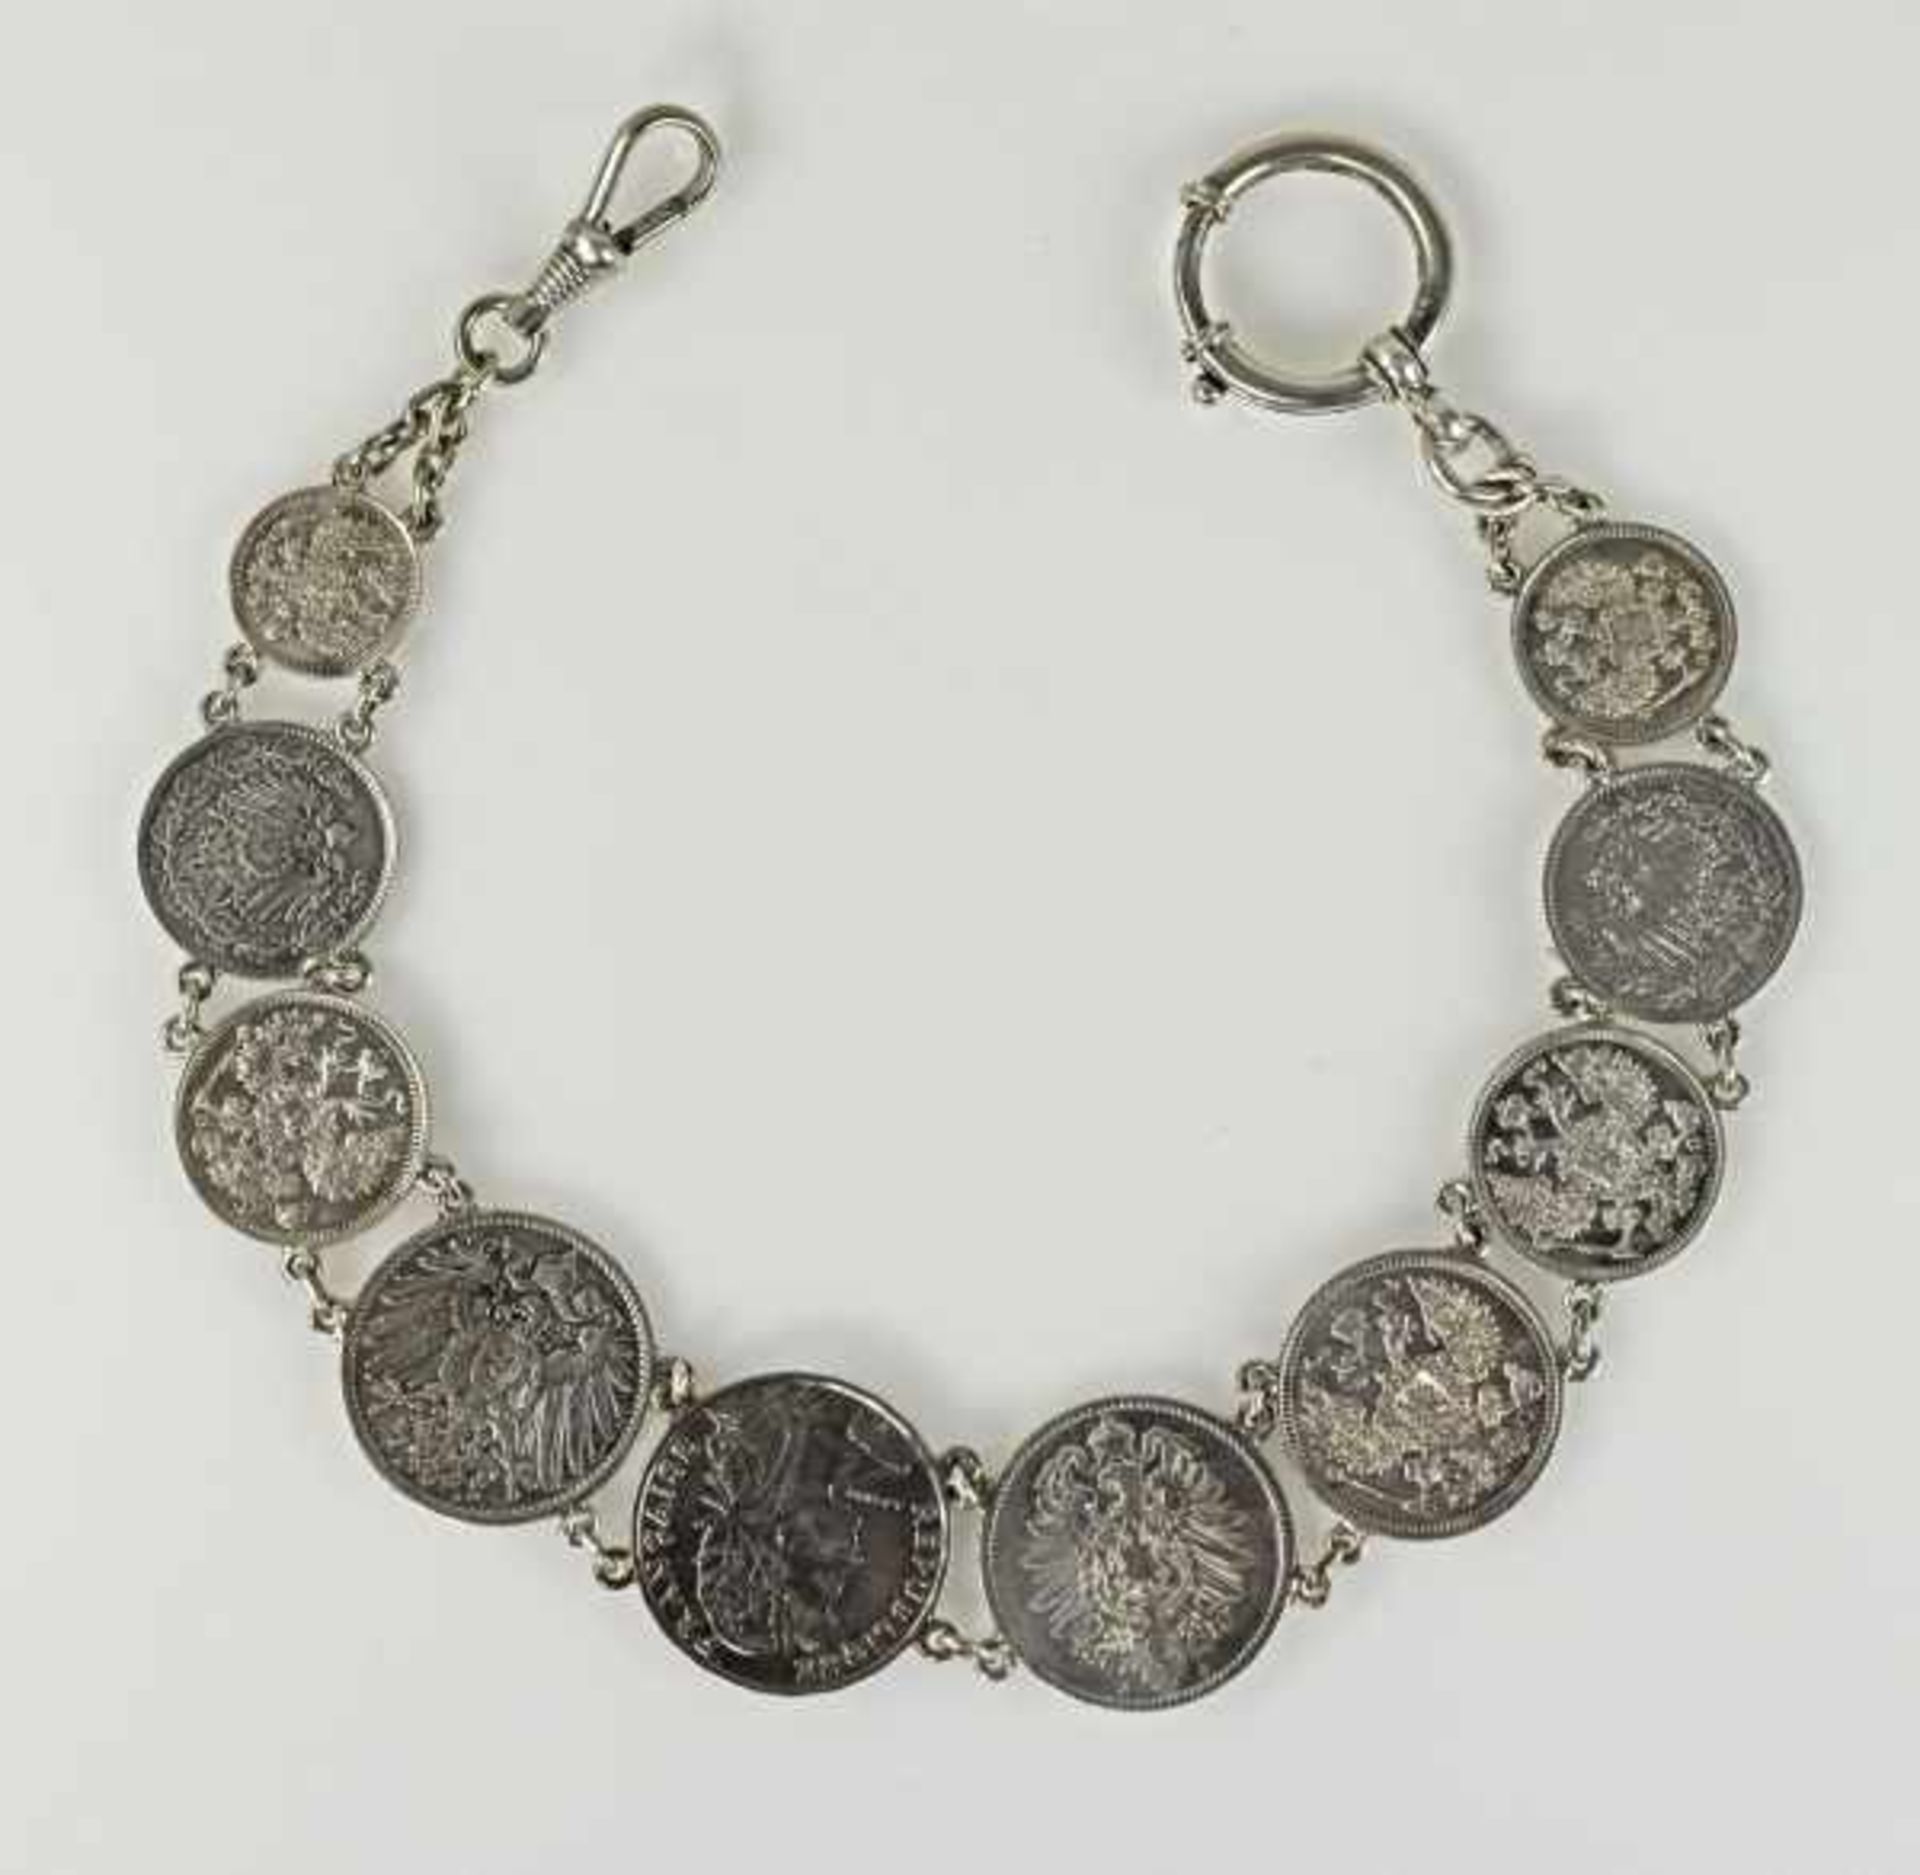 MÜNZ-UHRENKETTE 10 Silbermünzen im Verlauf: Mark, 1/2 Mark, Centimes, russische Münzen, Ende 19./ - Bild 2 aus 2